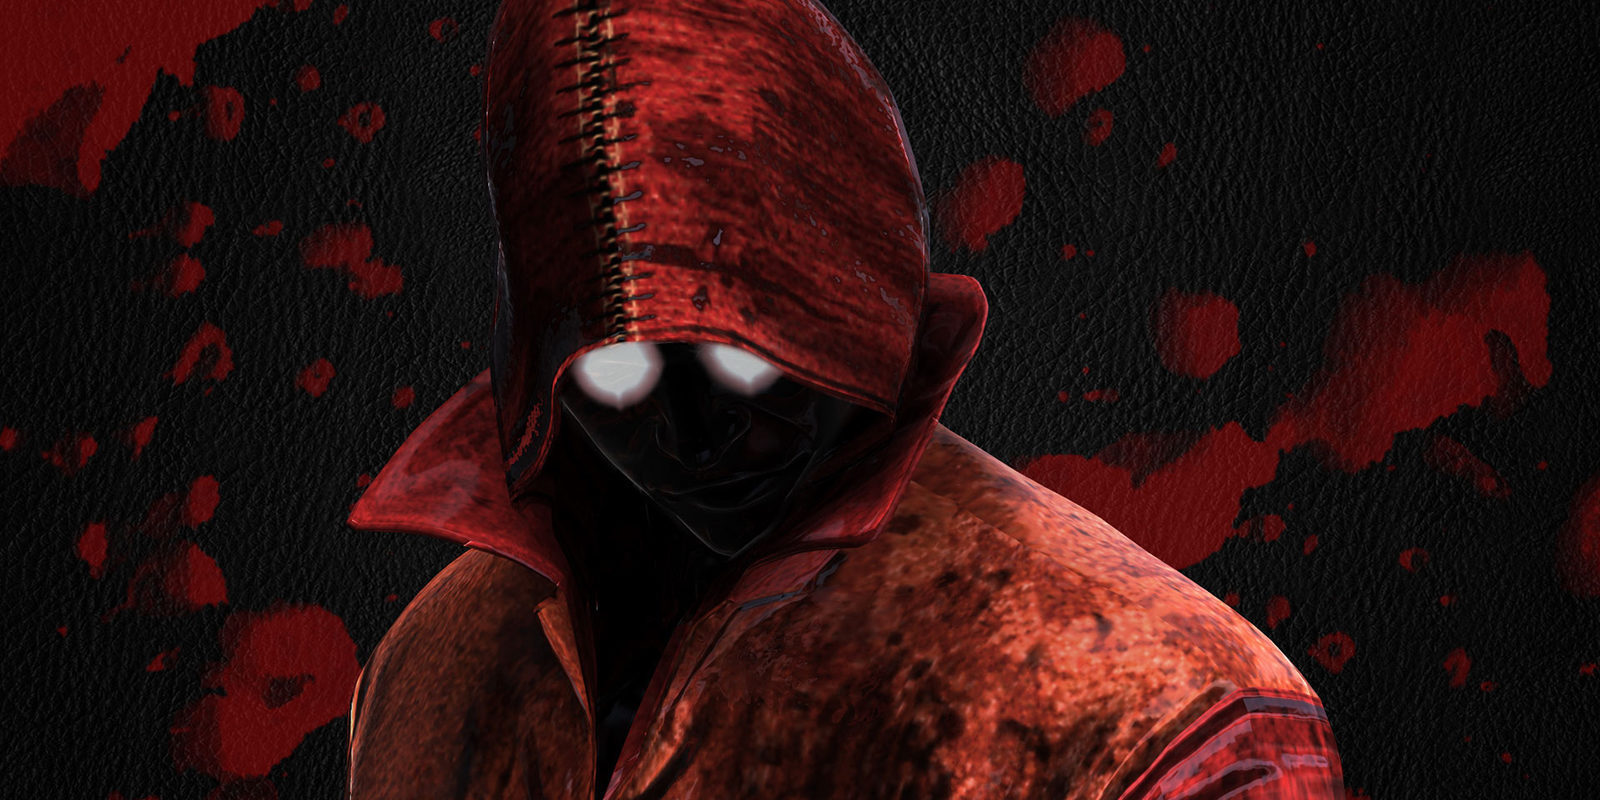 El nuevo juego del creador de 'Deadly Premonition' será "perverso, violento y loco"